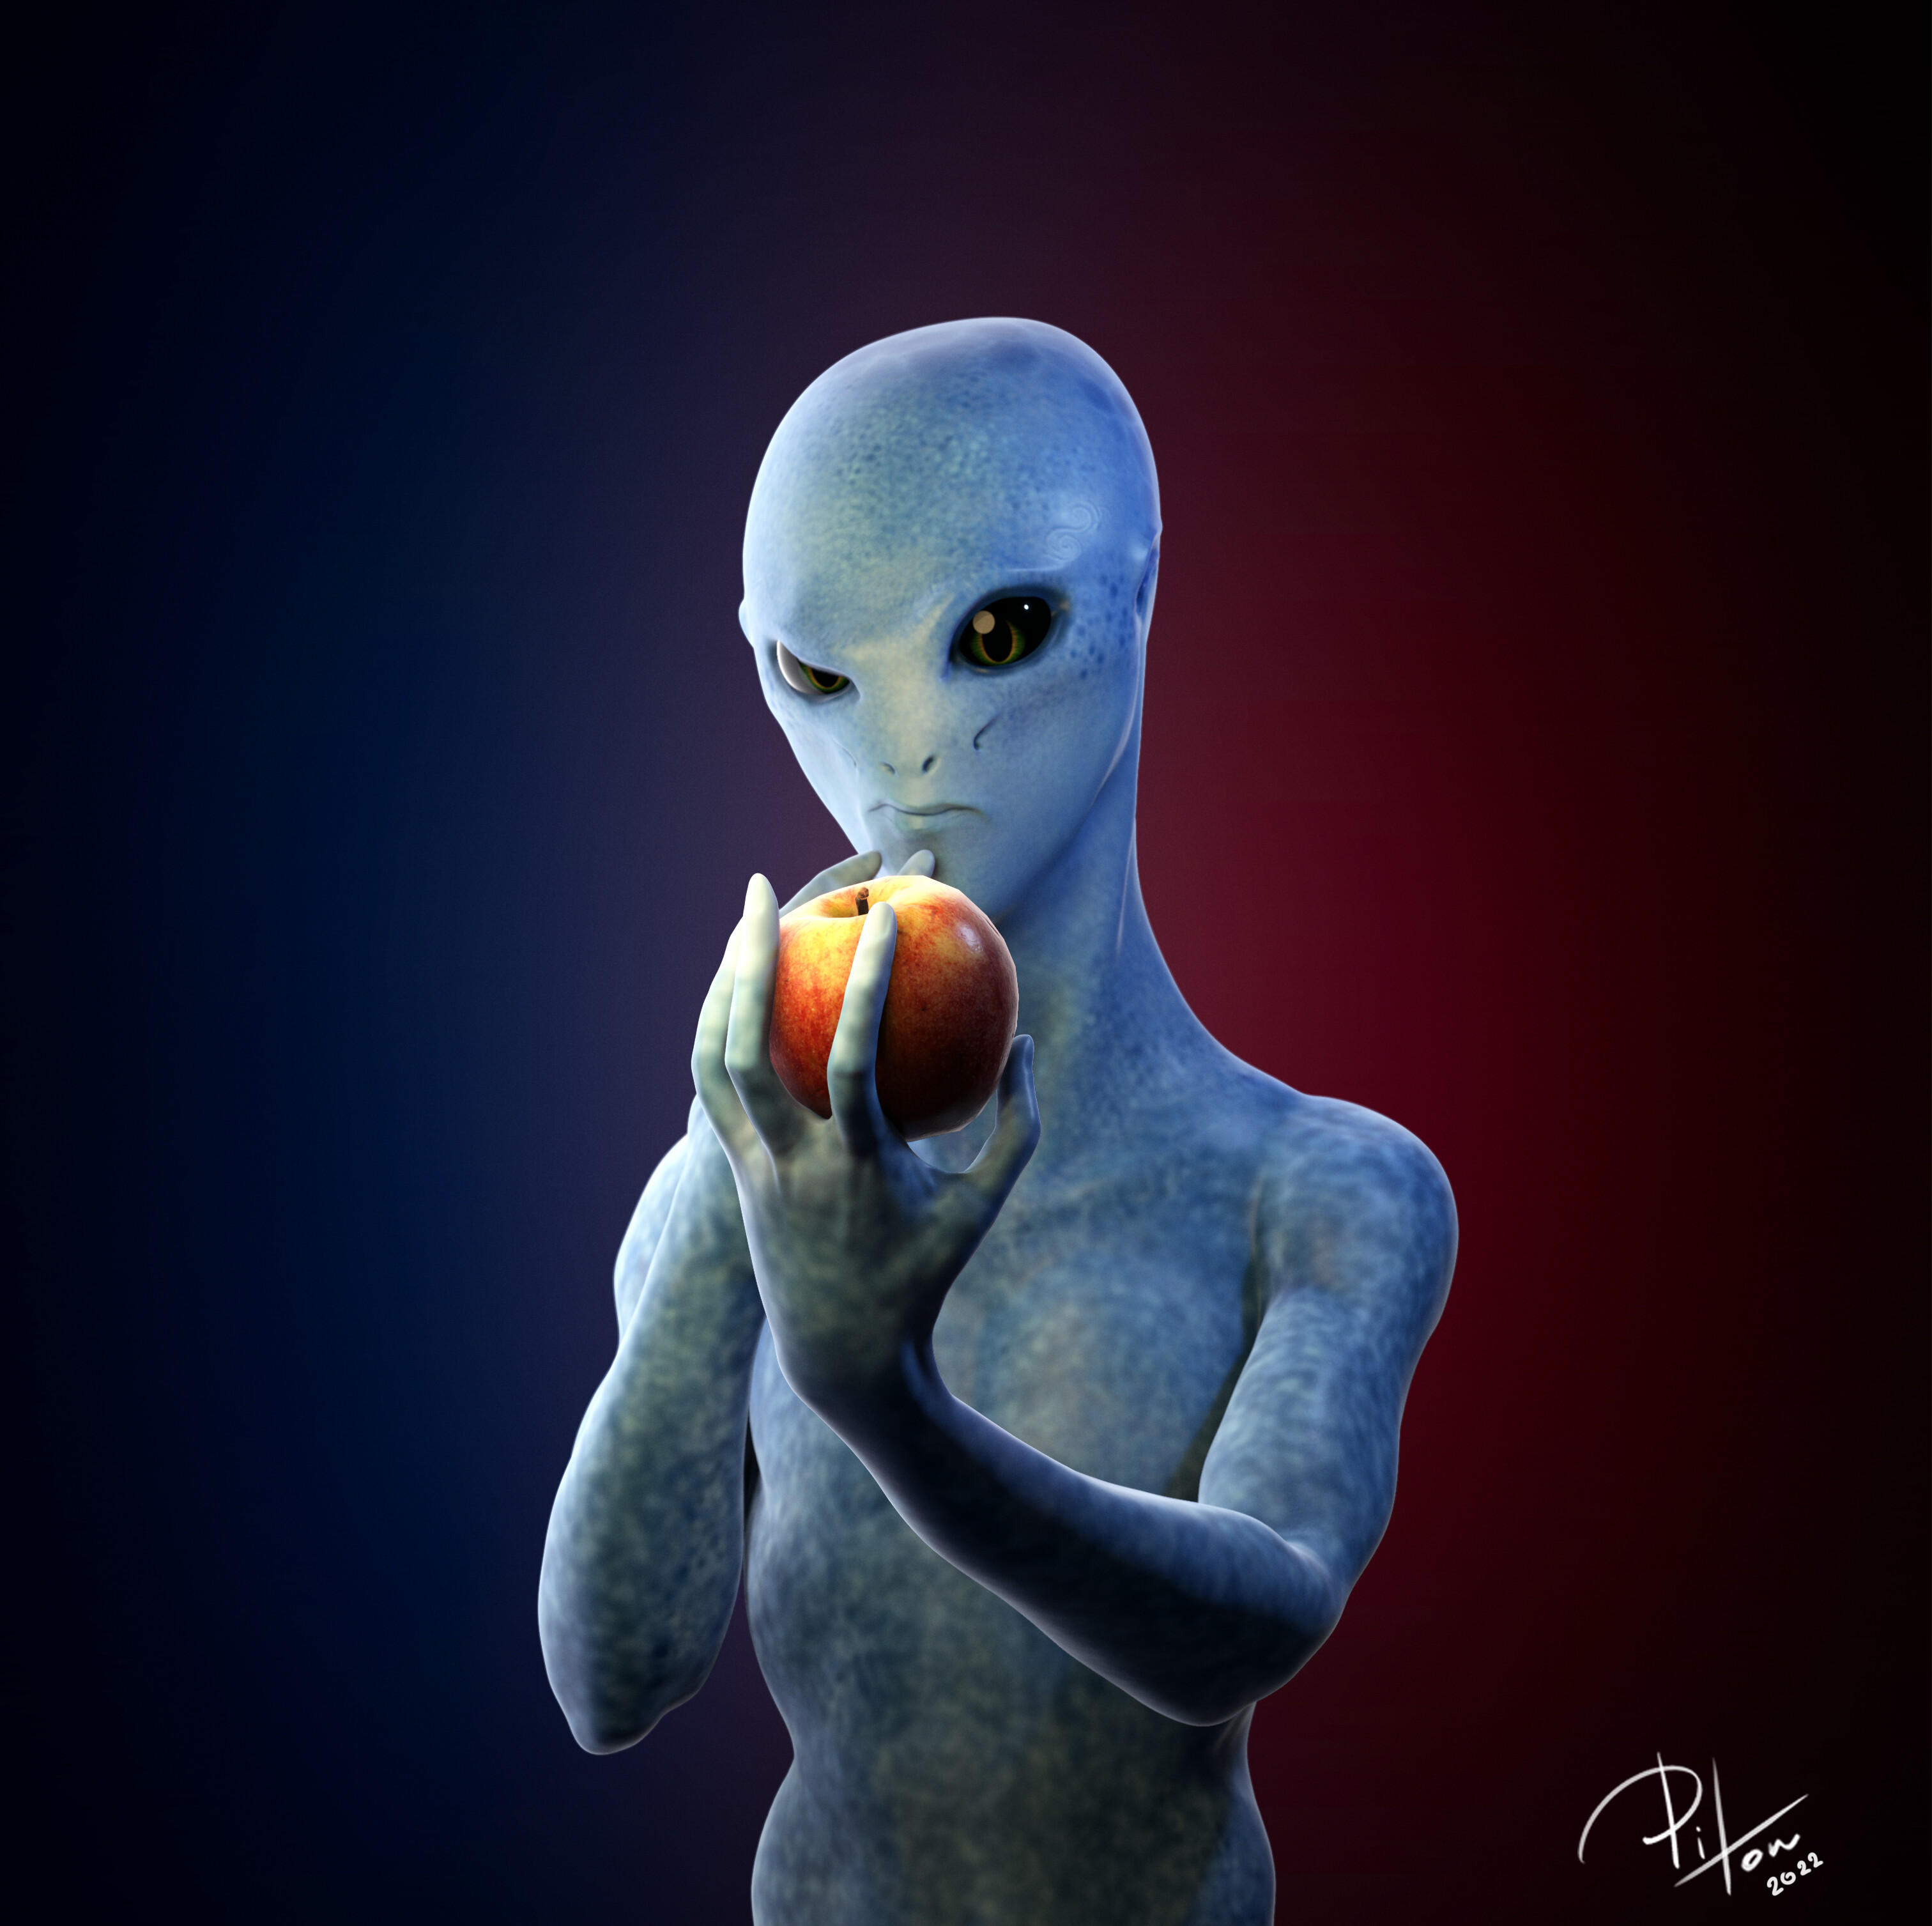 Aliens animation. Контакты с пришельцами 4 рода. Что делают инопланетяне с людьми. Эмоции человека 3-д блендер художников.